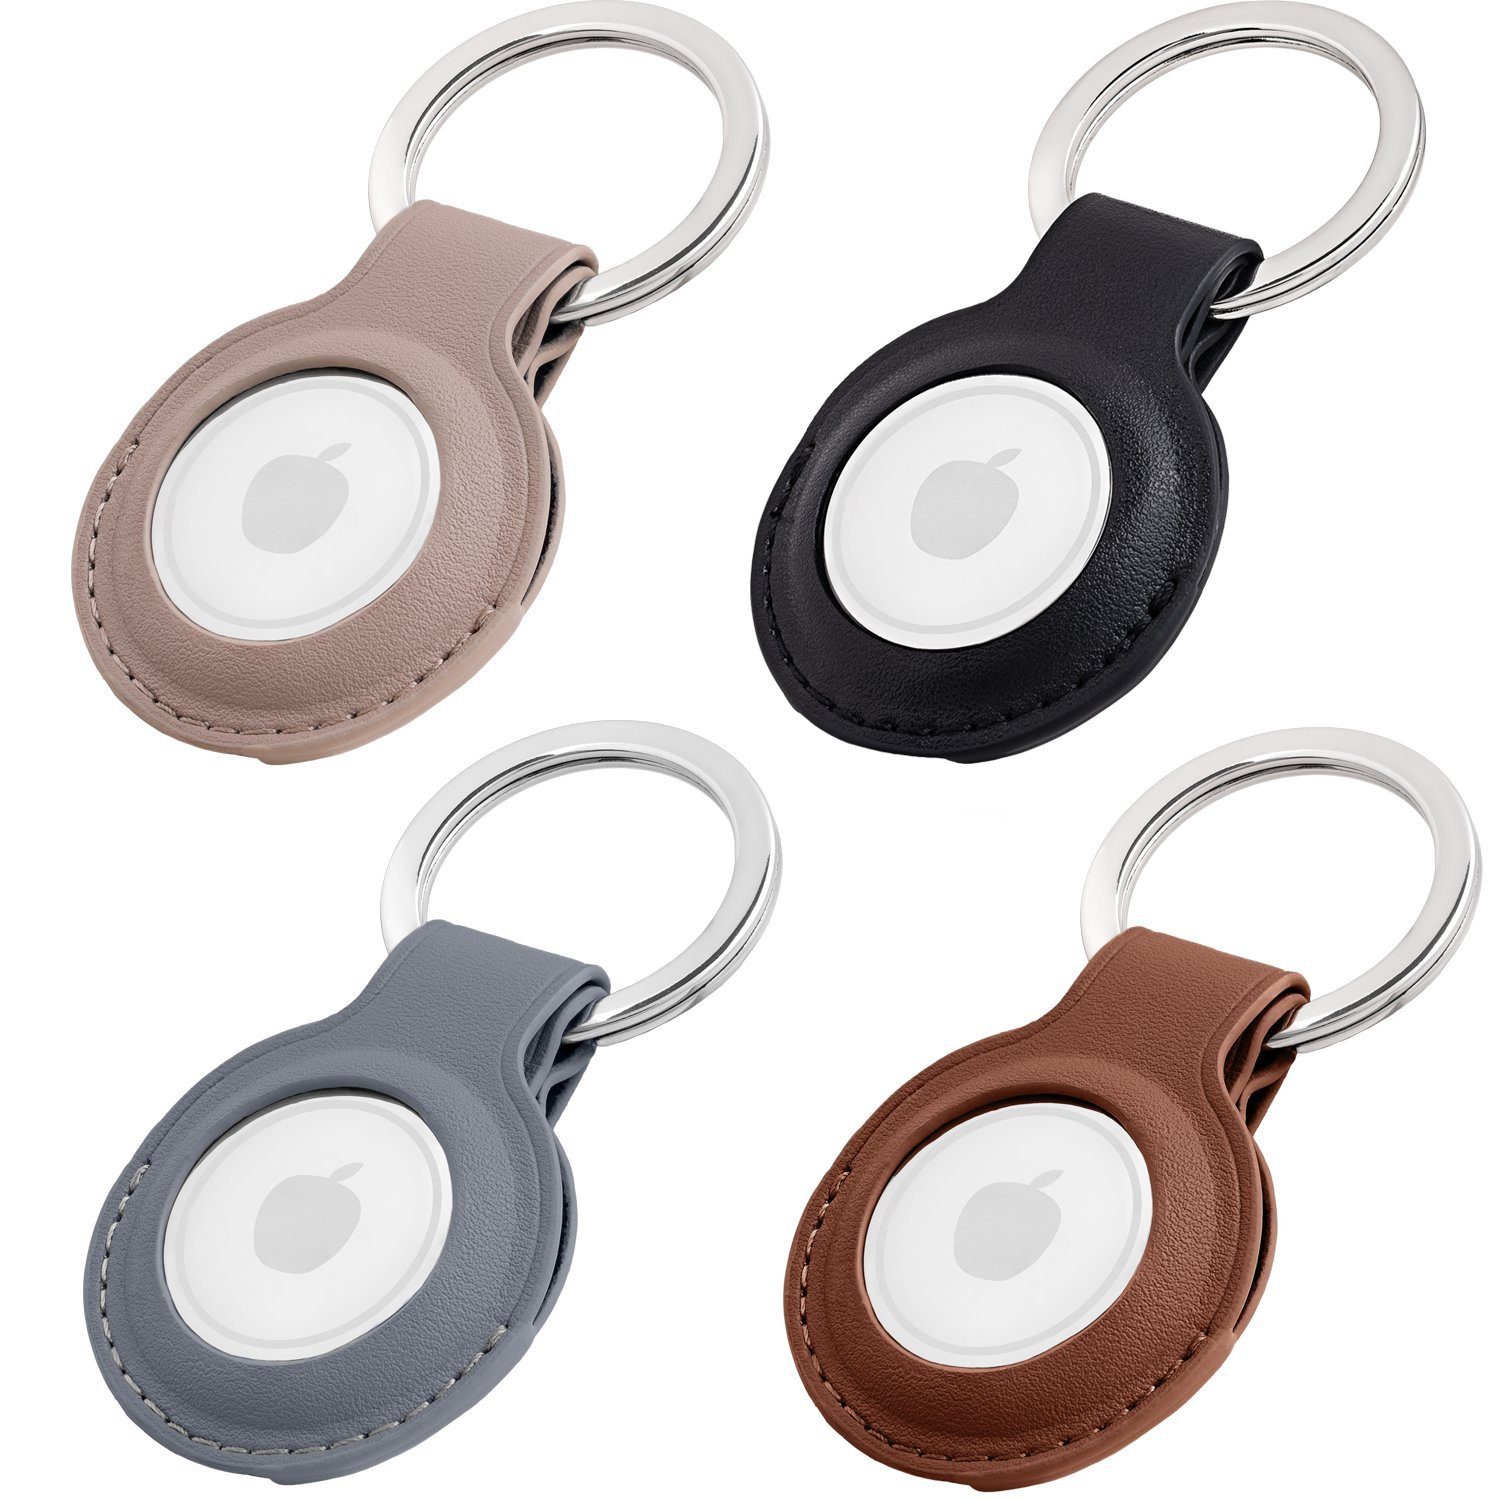 MAGATI Schlüsselanhänger Hülle kompatibel mit Apple Airtag Anhänger (Set, 4-tlg., Premiumleder Anhänger mit Edelstahl Schlüsselring für Apple AirTag), Komplett schützendes Zubehör, Grau+Braun+Schwarz+Taupe